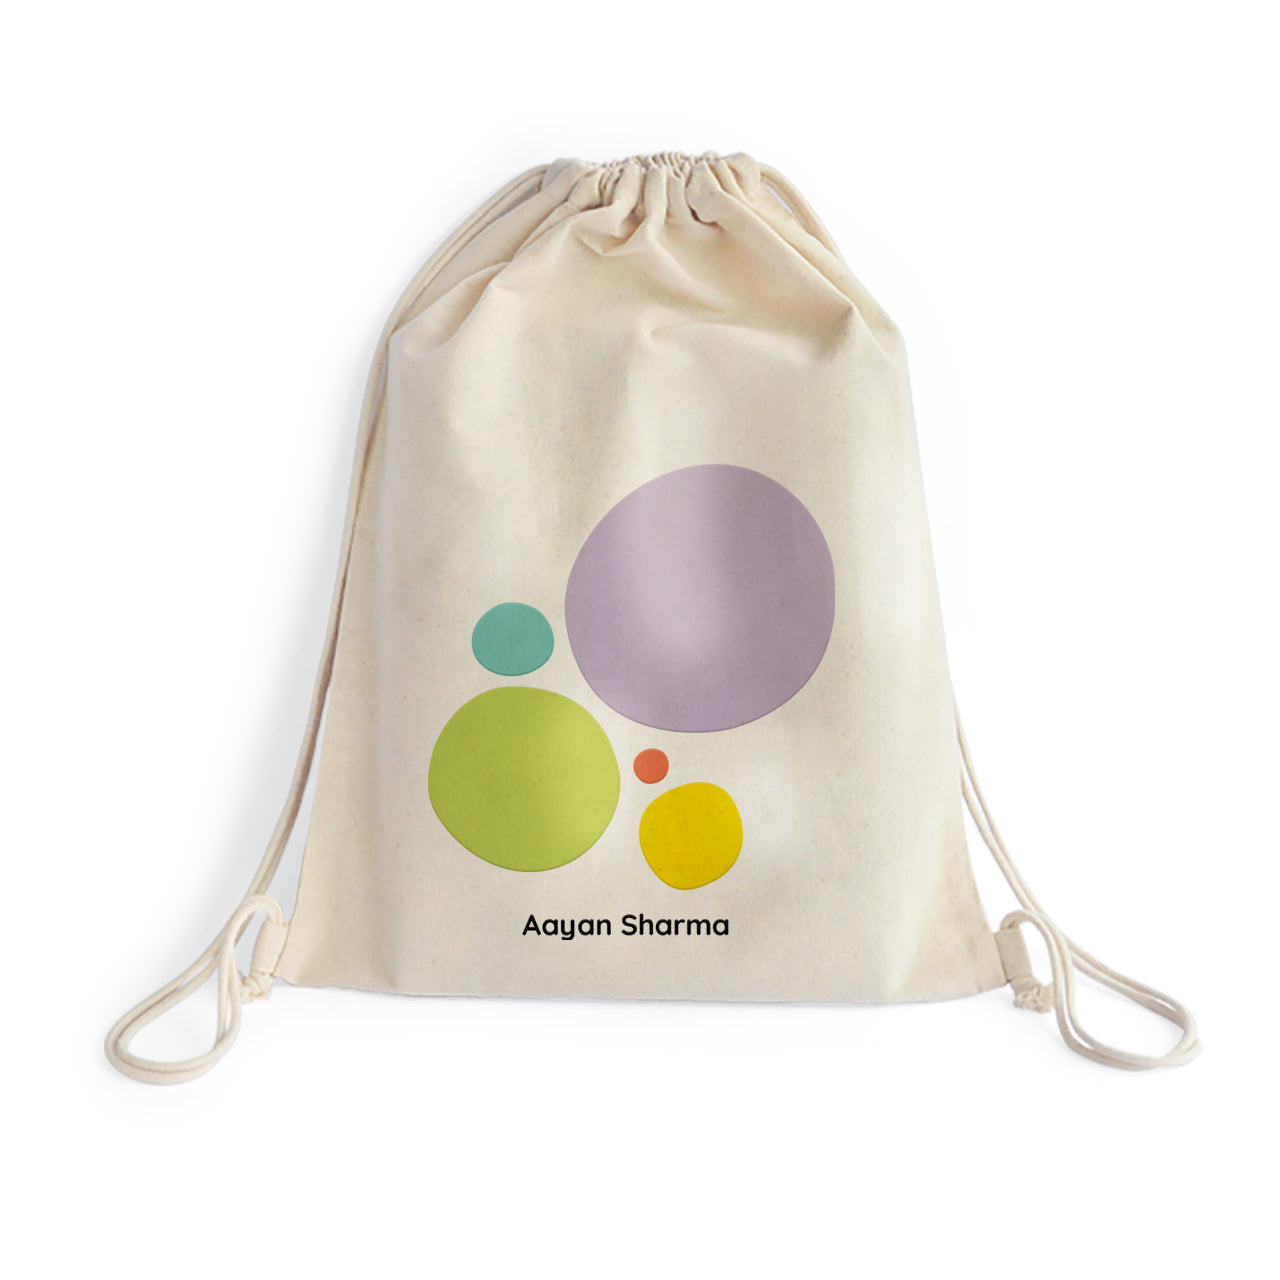 Personalised Drawstring Bag - Polka Dots